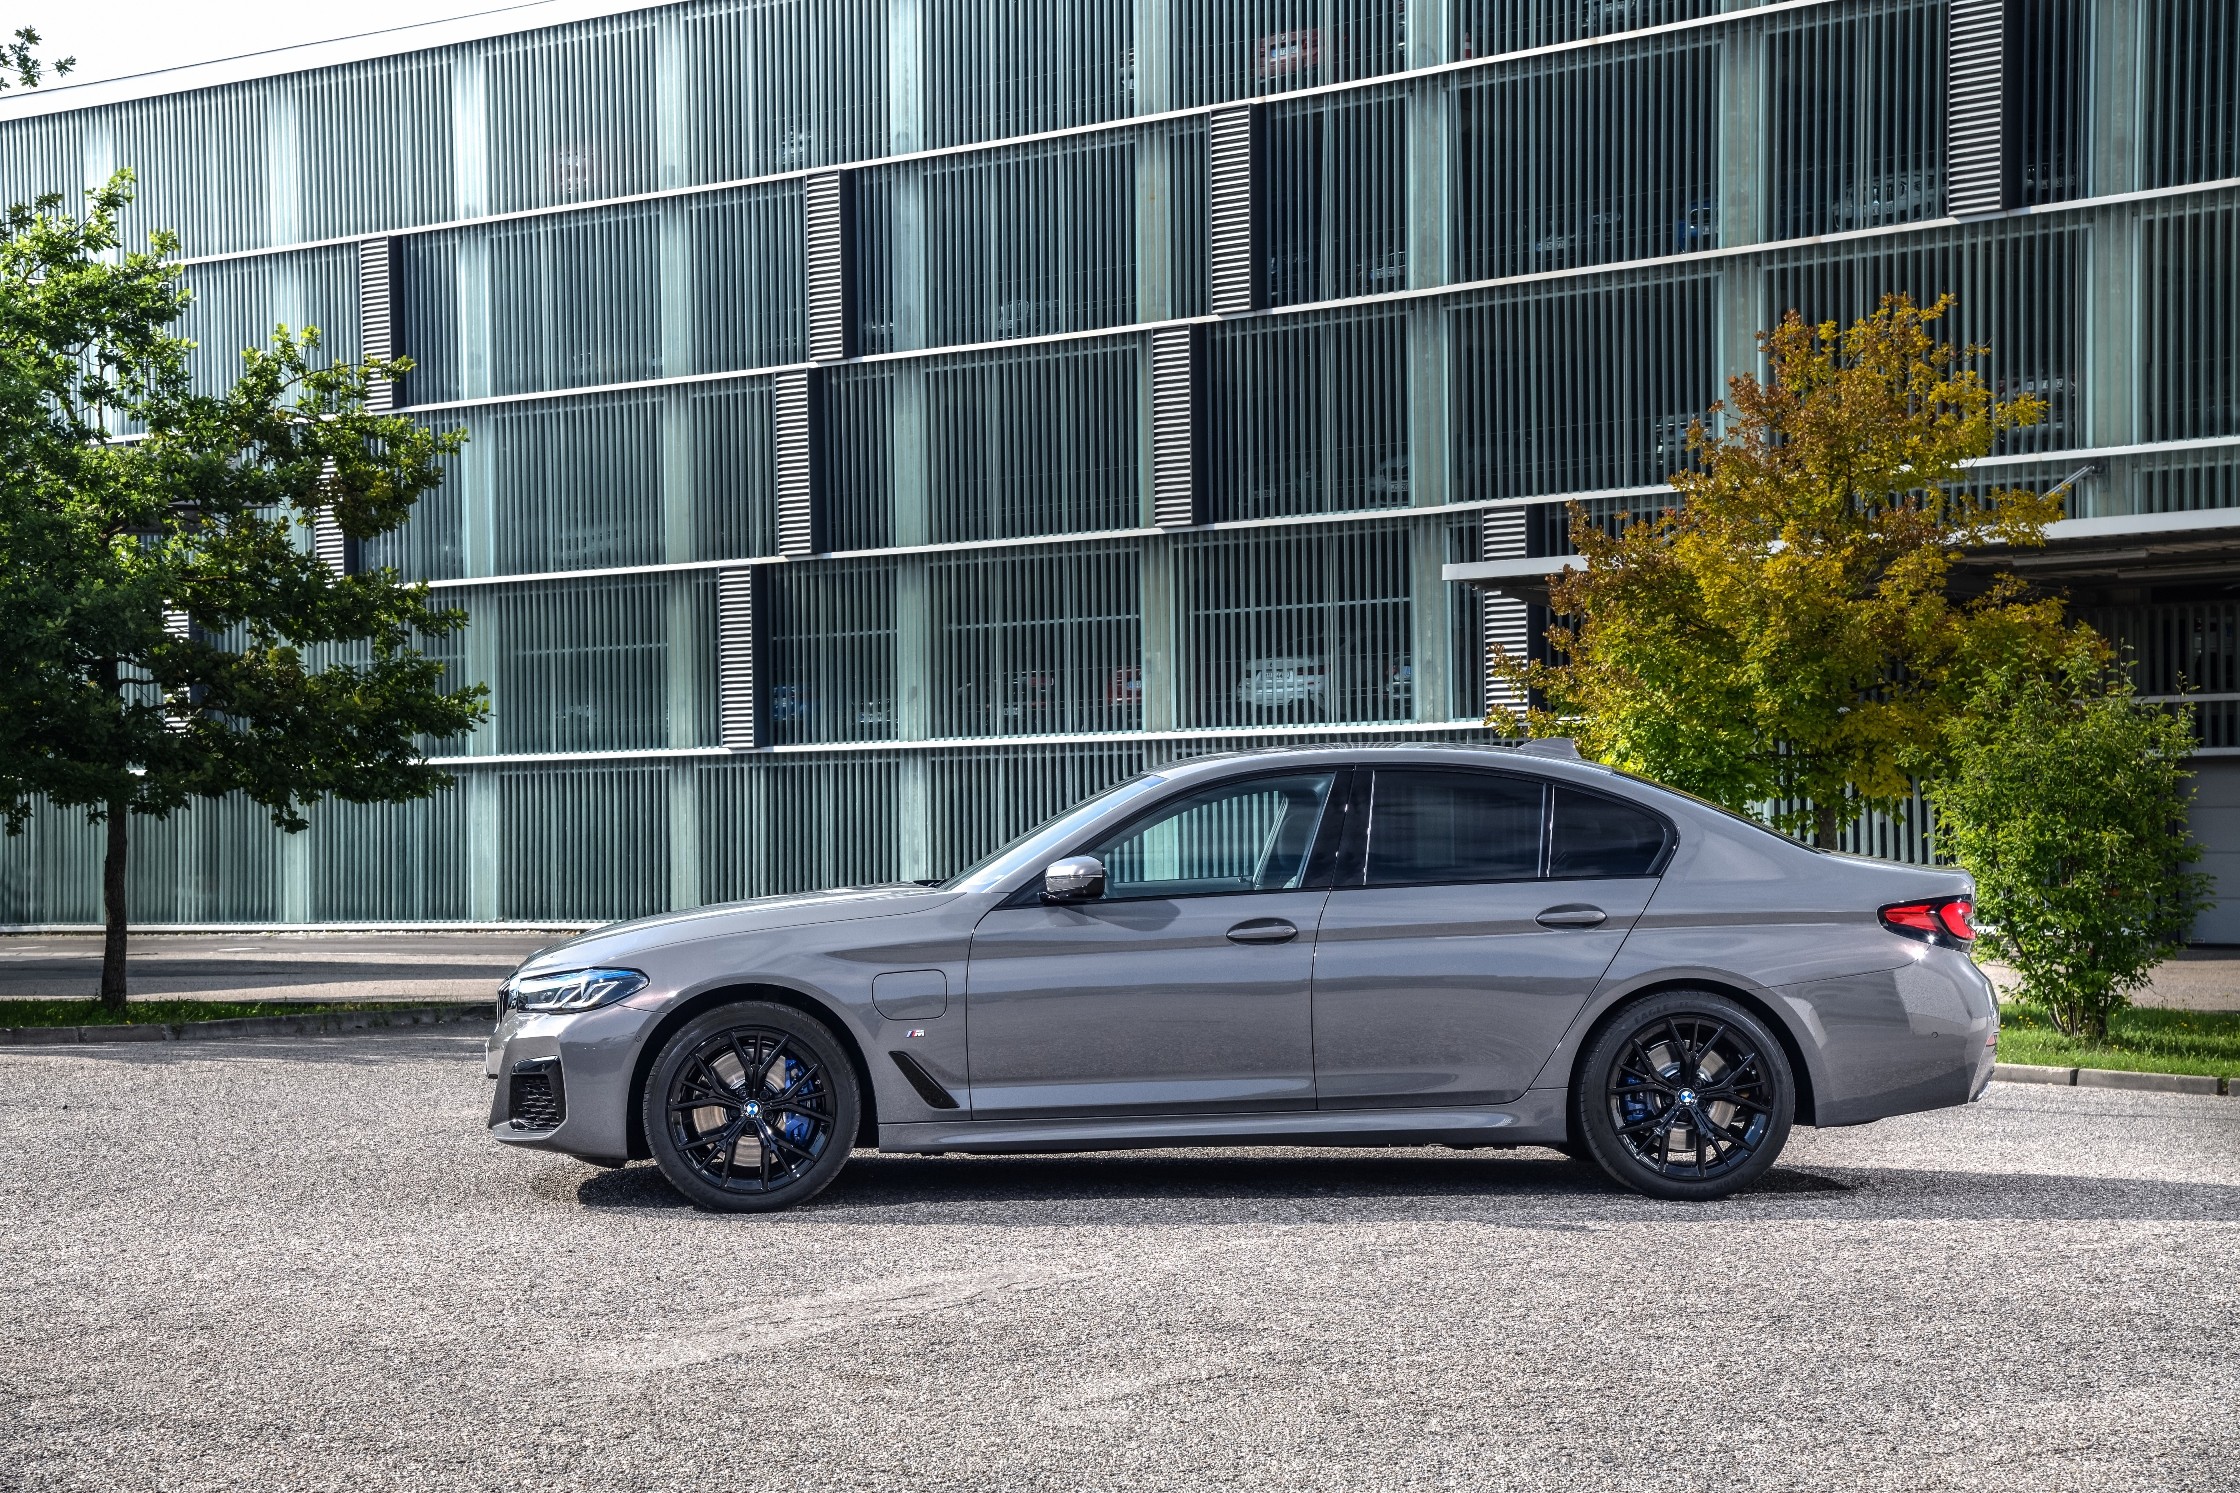 2021 BMW 5 Series Gains Powerful Plug-In Hybrid Option ...